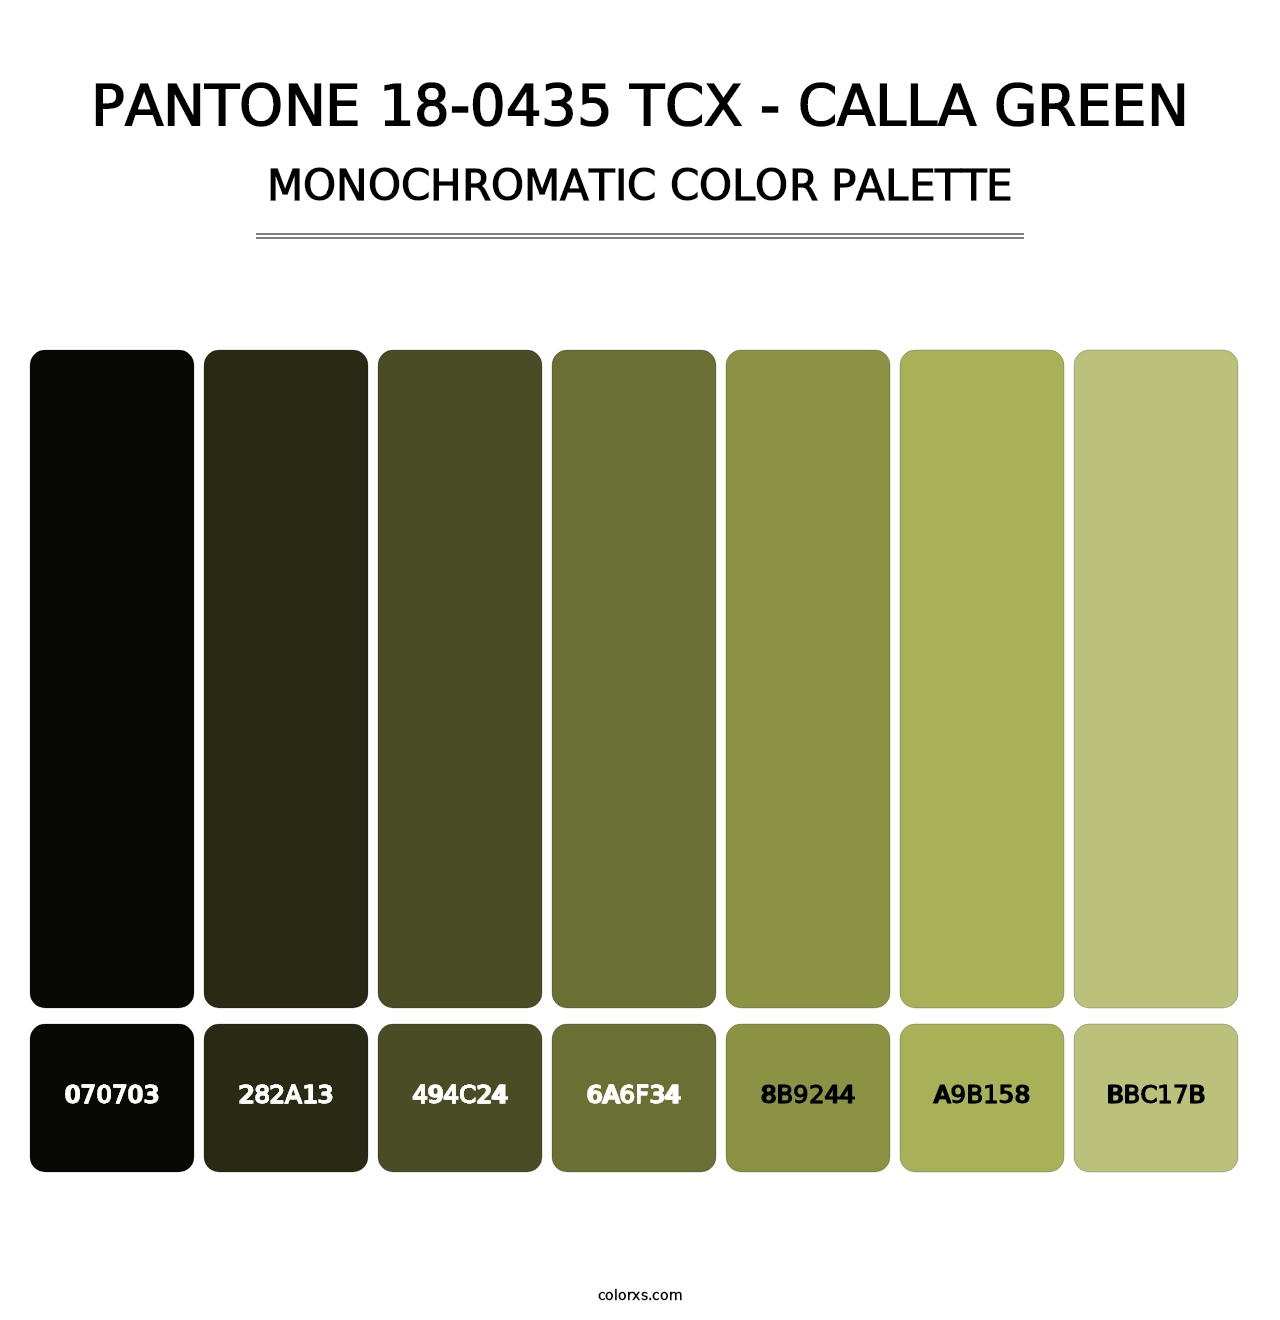 PANTONE 18-0435 TCX - Calla Green - Monochromatic Color Palette